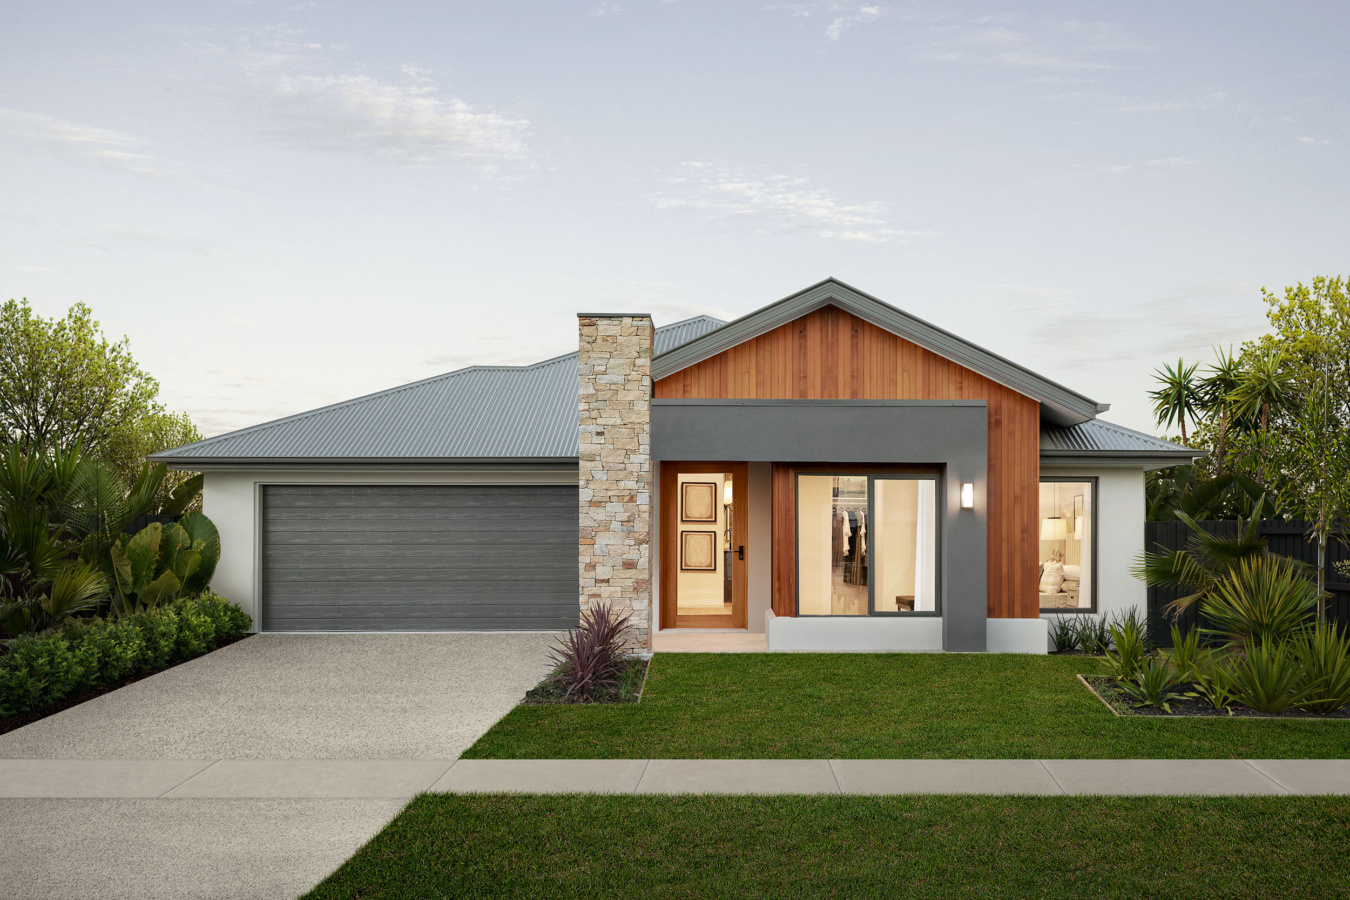 Modern Farmhouse facade - Coral Homes designs